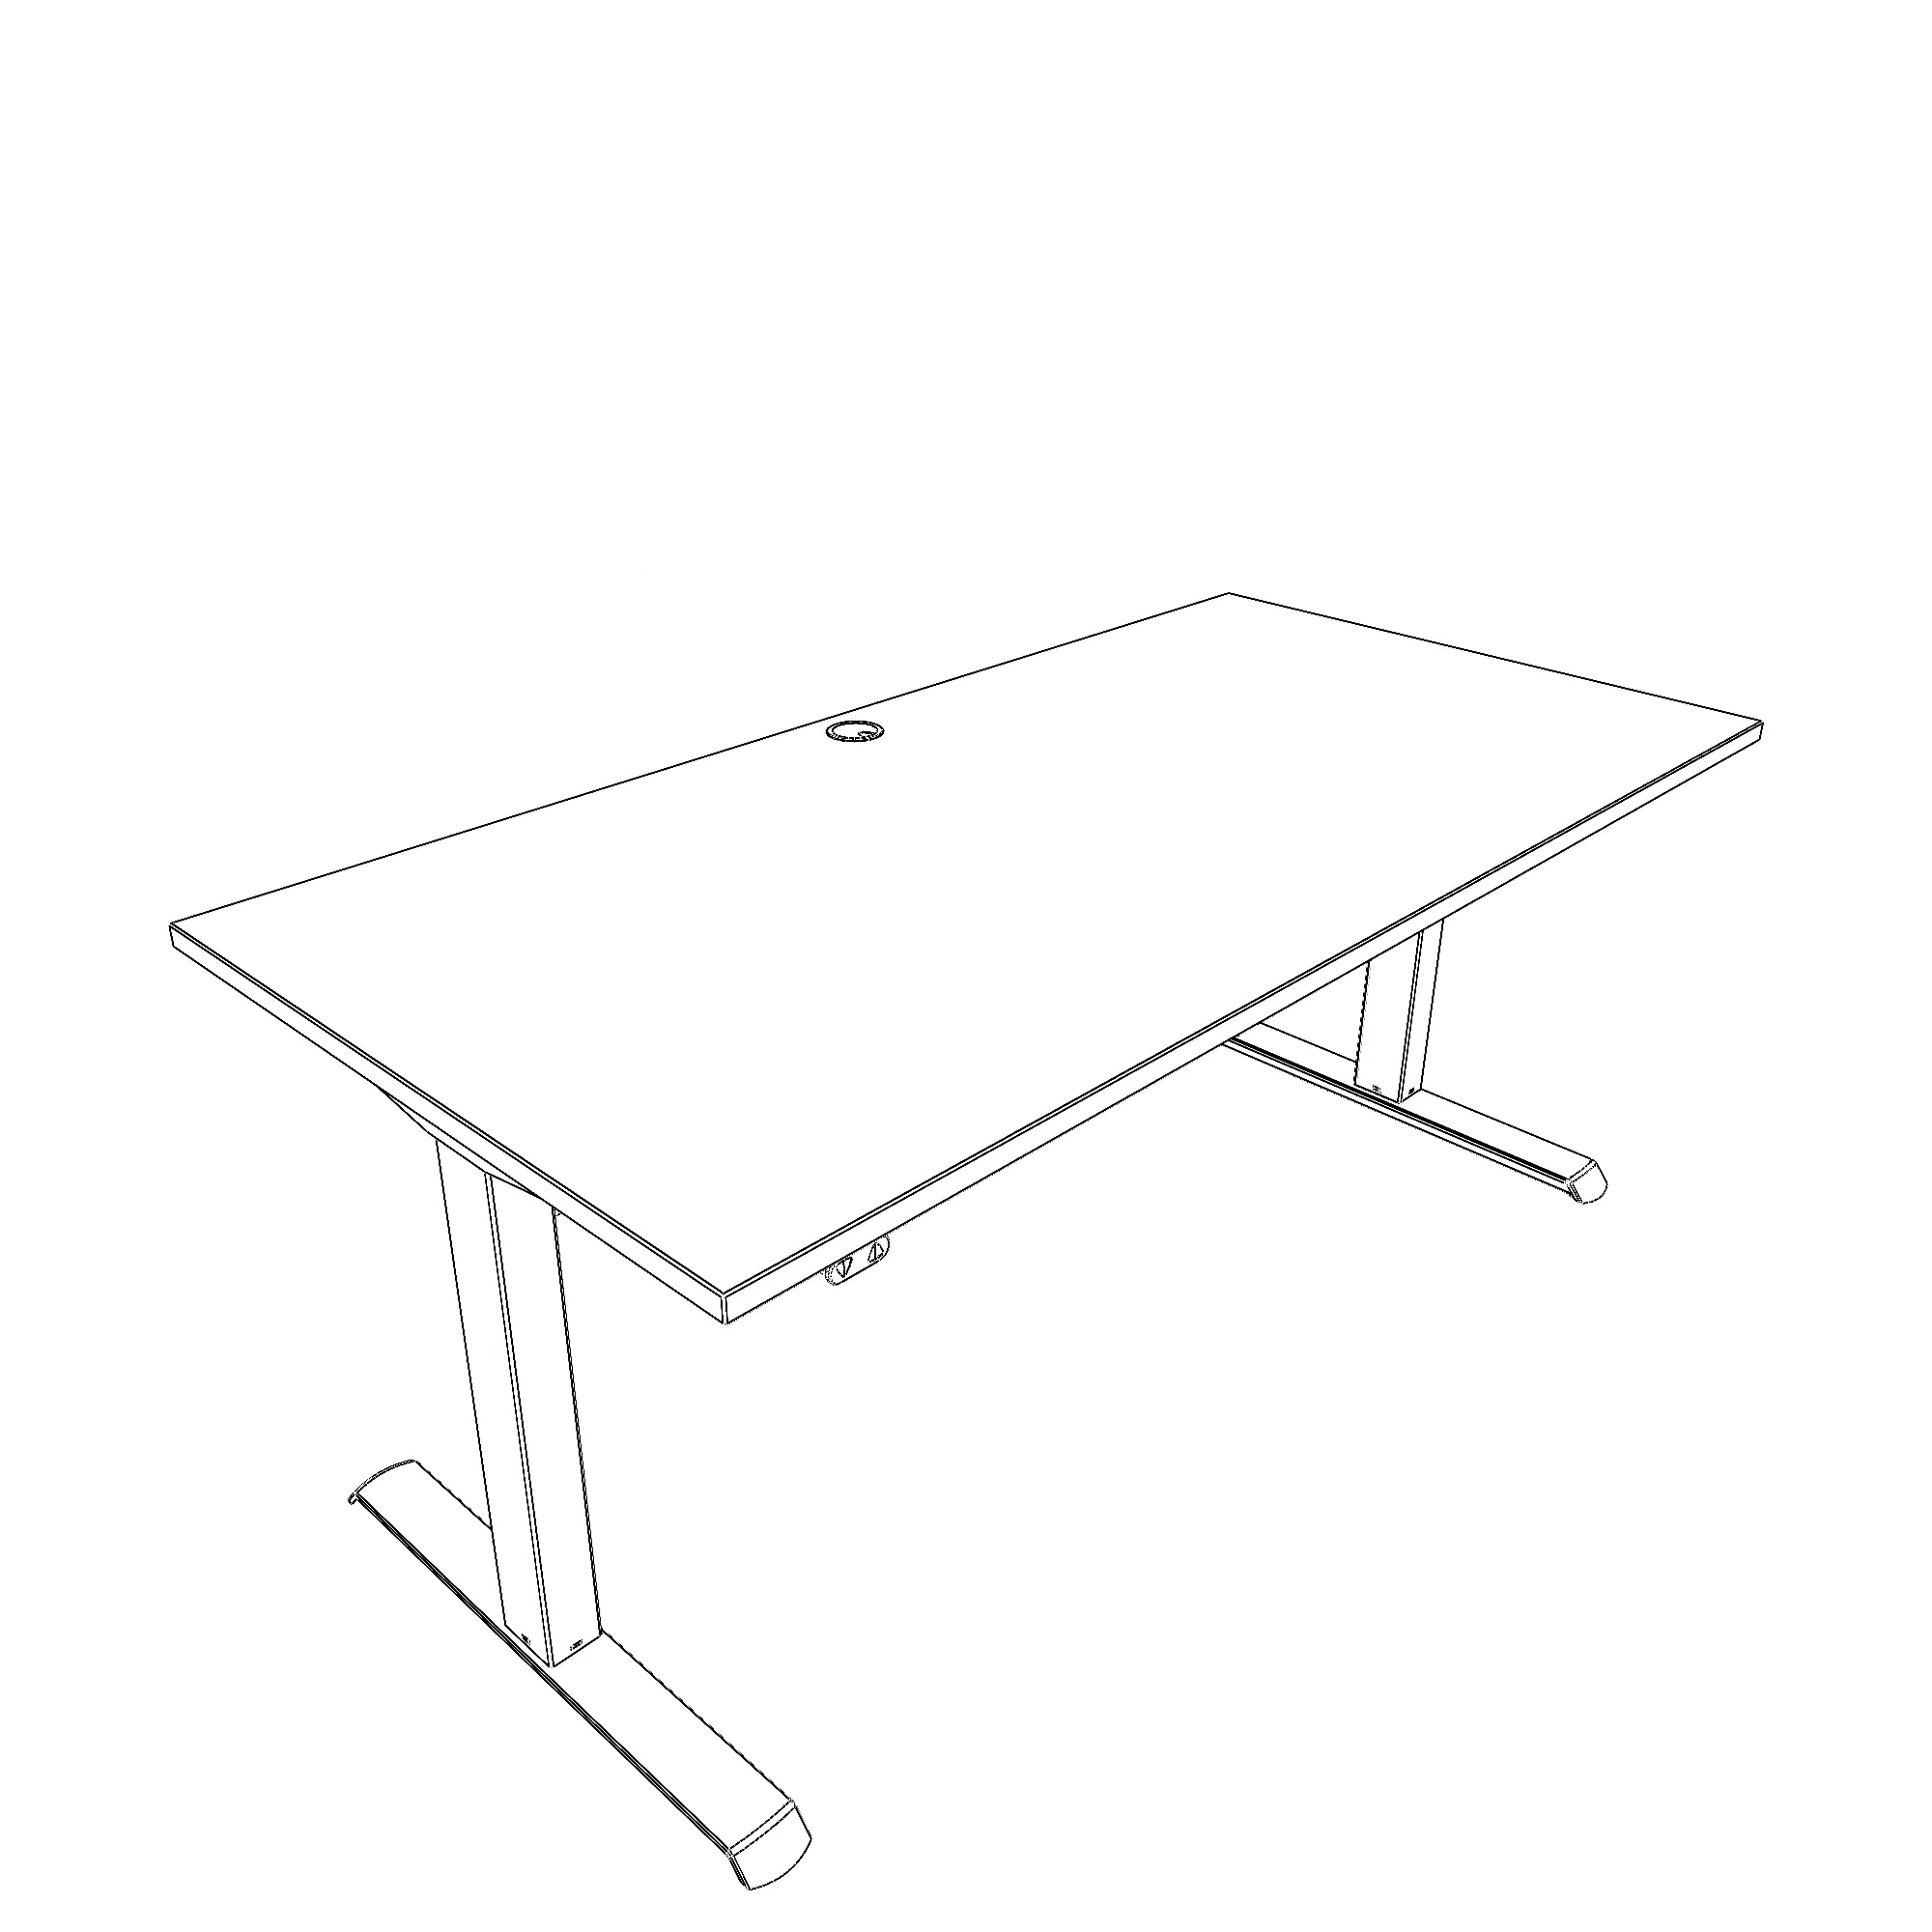 Elektrisch verstelbaar bureau | 160x80 cm | Wit met wit frame